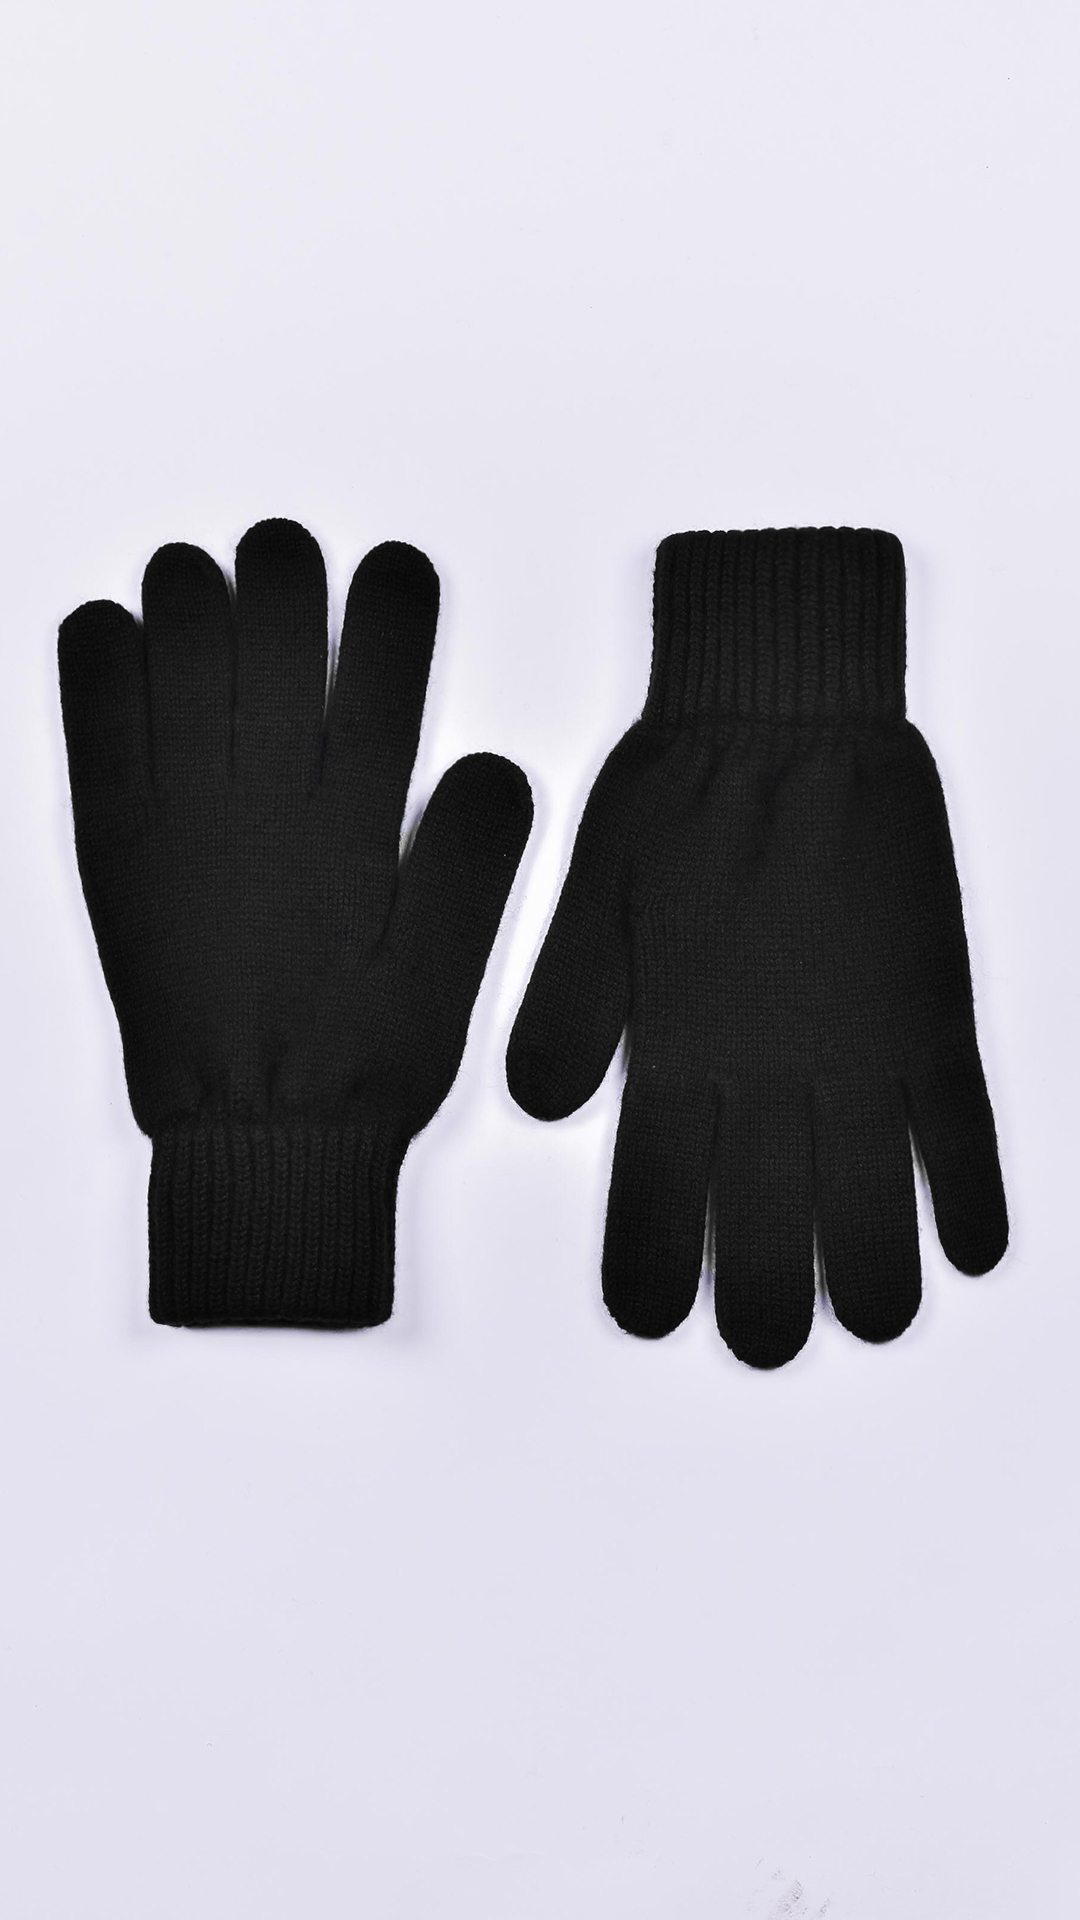 Glovesdario nero 1 1stAmerican guanti 100% puro cashmere da uomo Made in Italy - caldi guanti invernali